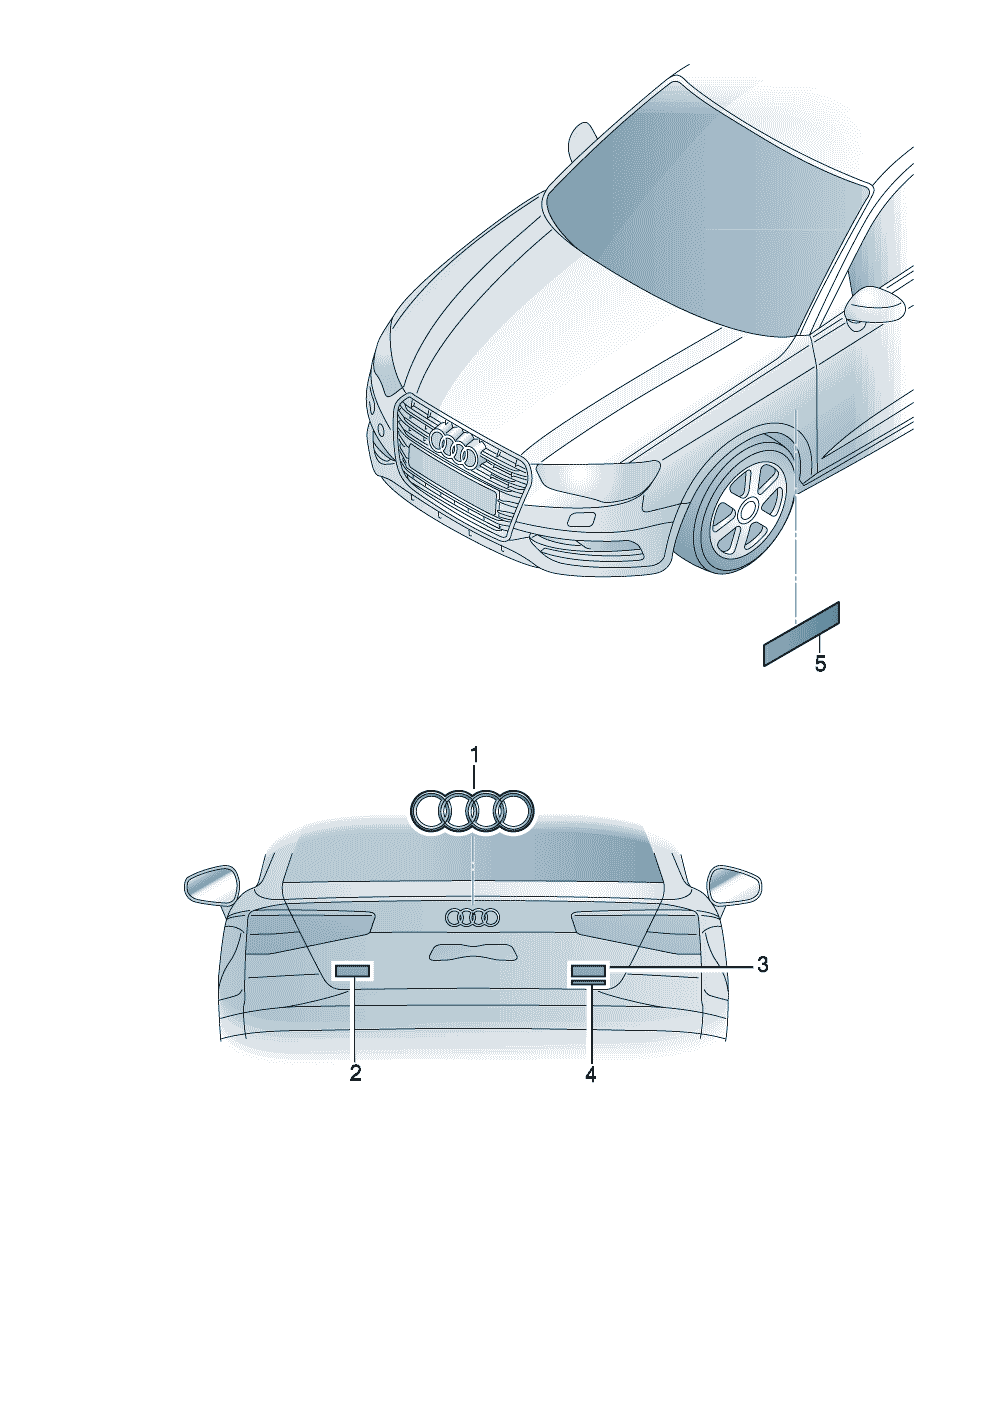 Надписи задн. - Audi RS6RS6 plus/Avant qu. - rs6